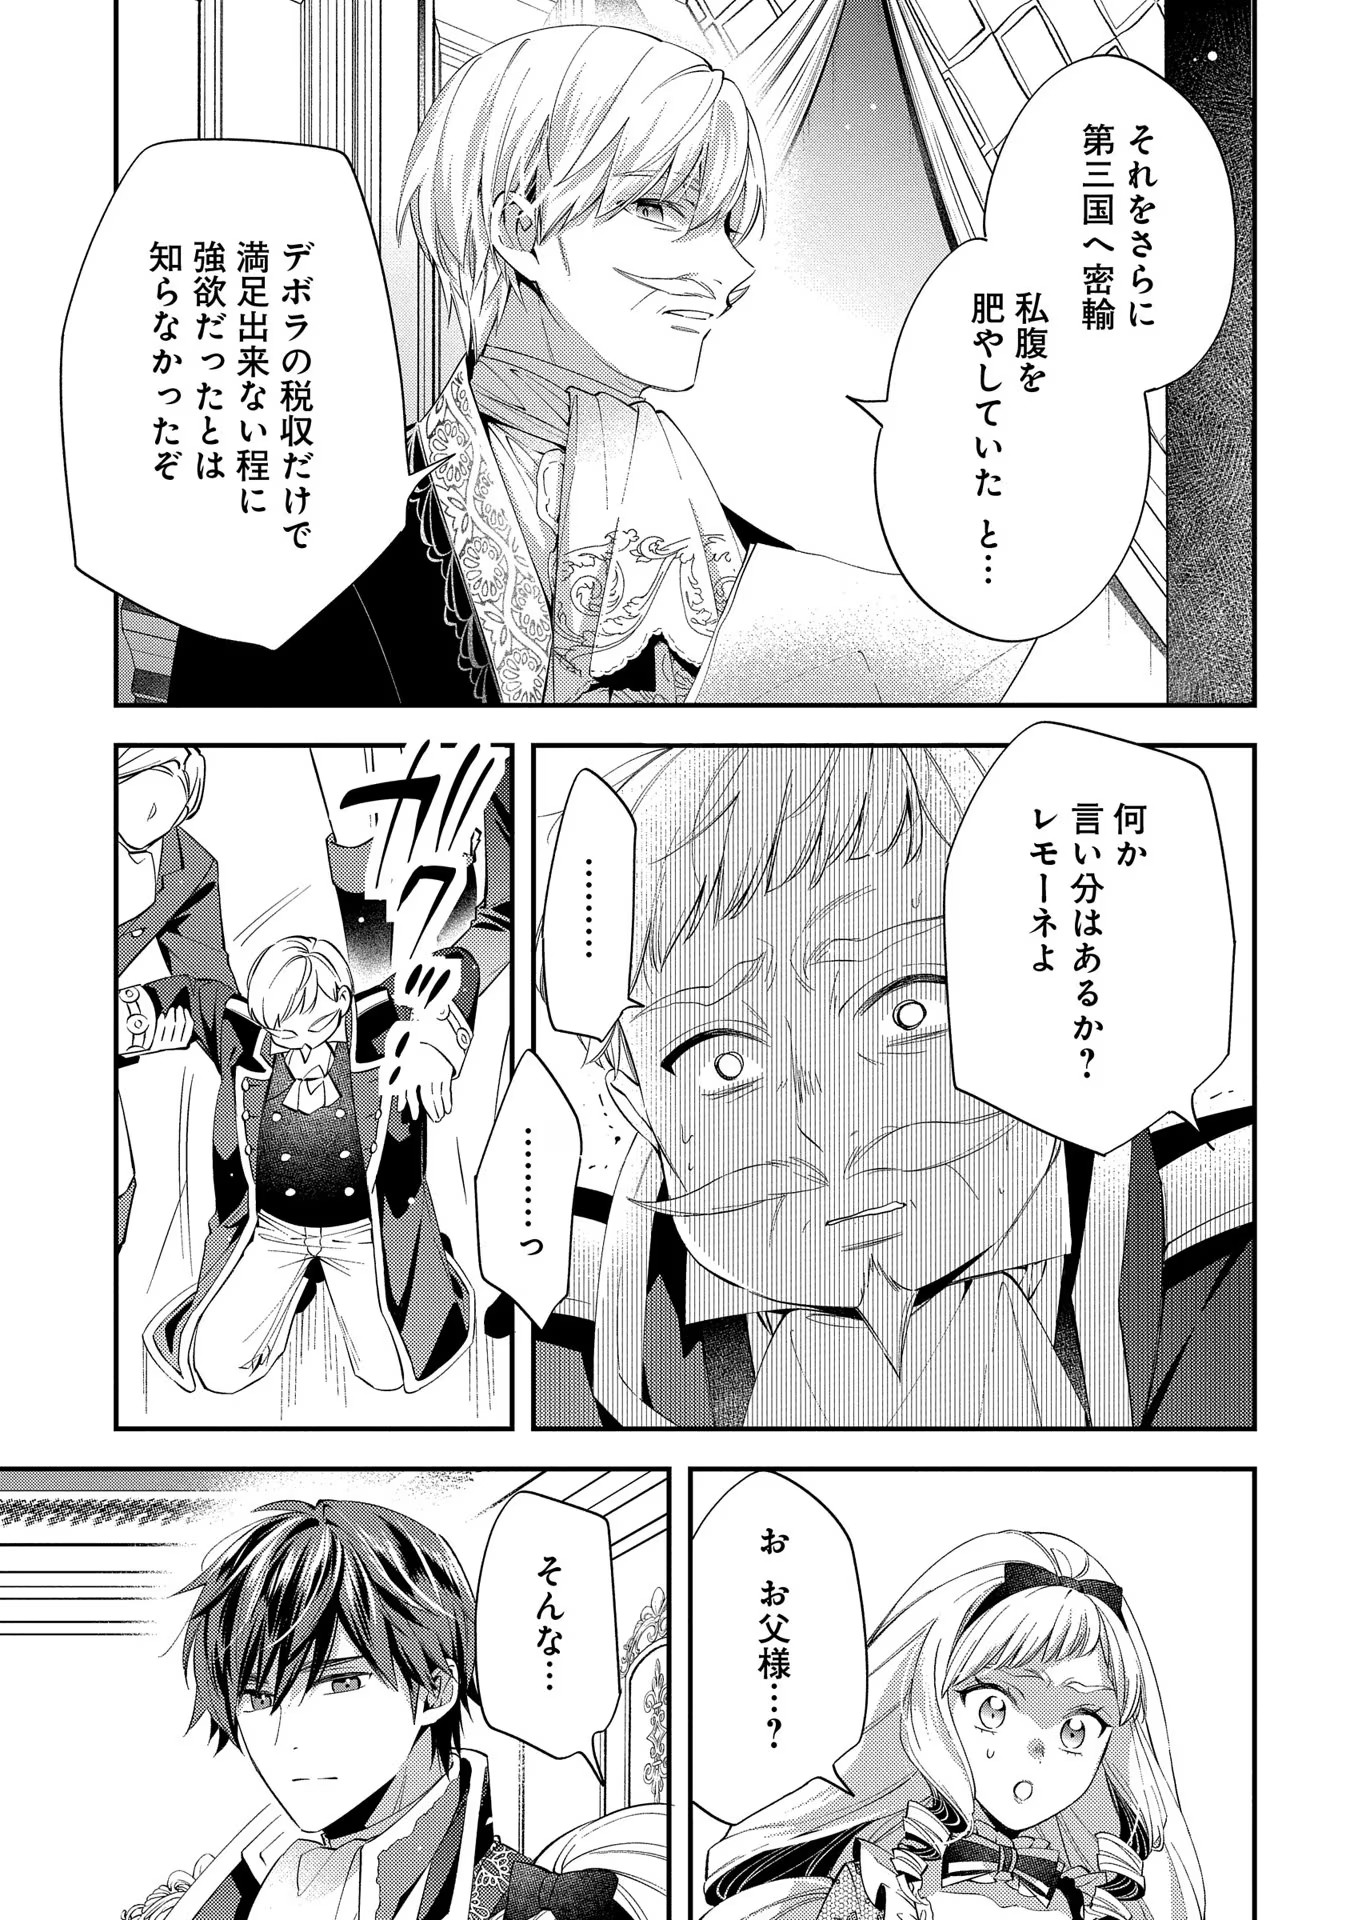 Outaishi ni Konyaku Hakisareta no de, Mou Baka no Furi wa Yameyou to Omoimasu - Chapter 16 - Page 29